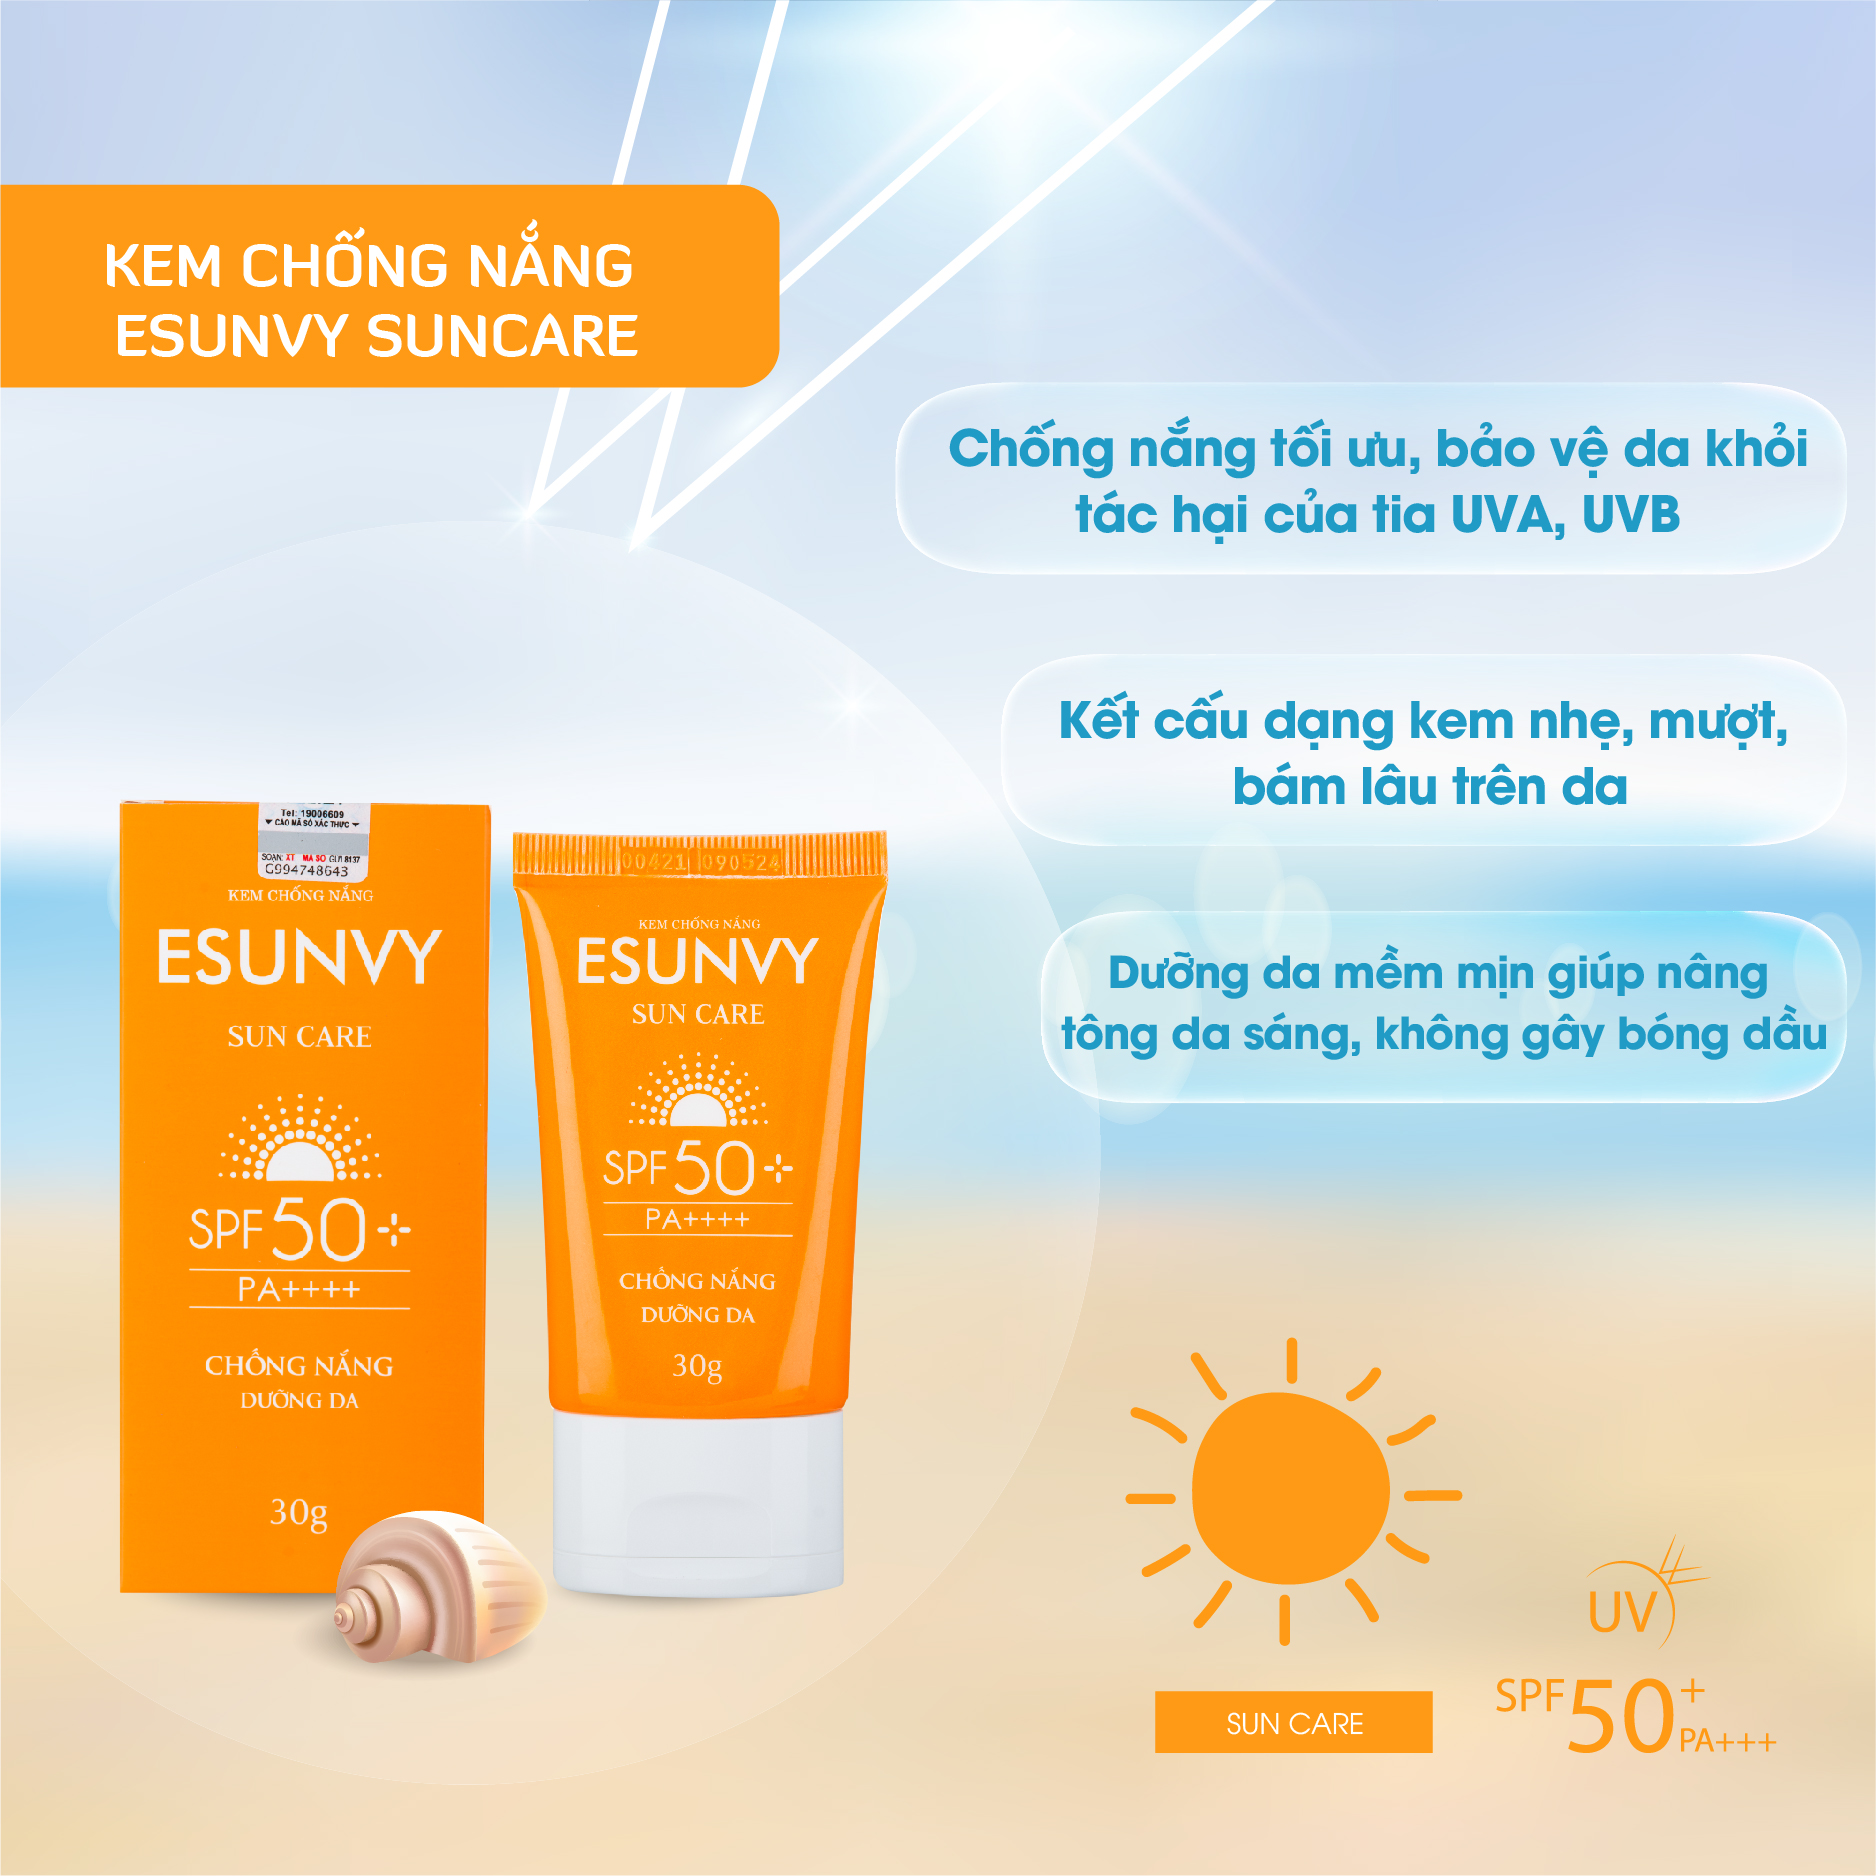 KEM CHỐNG NẮNG ESUNVY SUN CARE SPF50+/PA++++ - Chống nắng, dưỡng da - Tuýp 30g